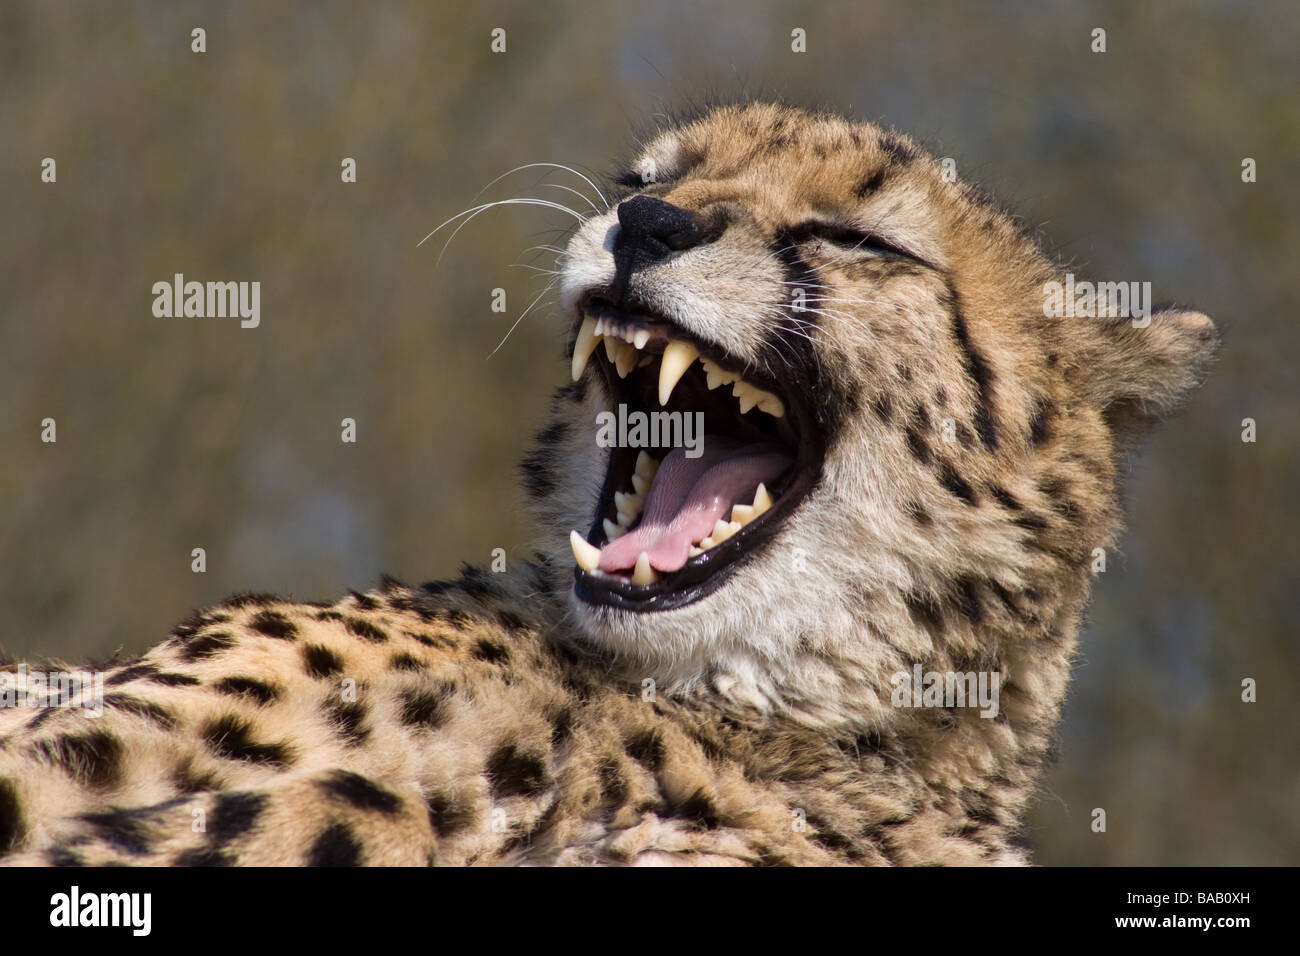 knurrend-oder-lachen-gepard-bab0xh.jpg